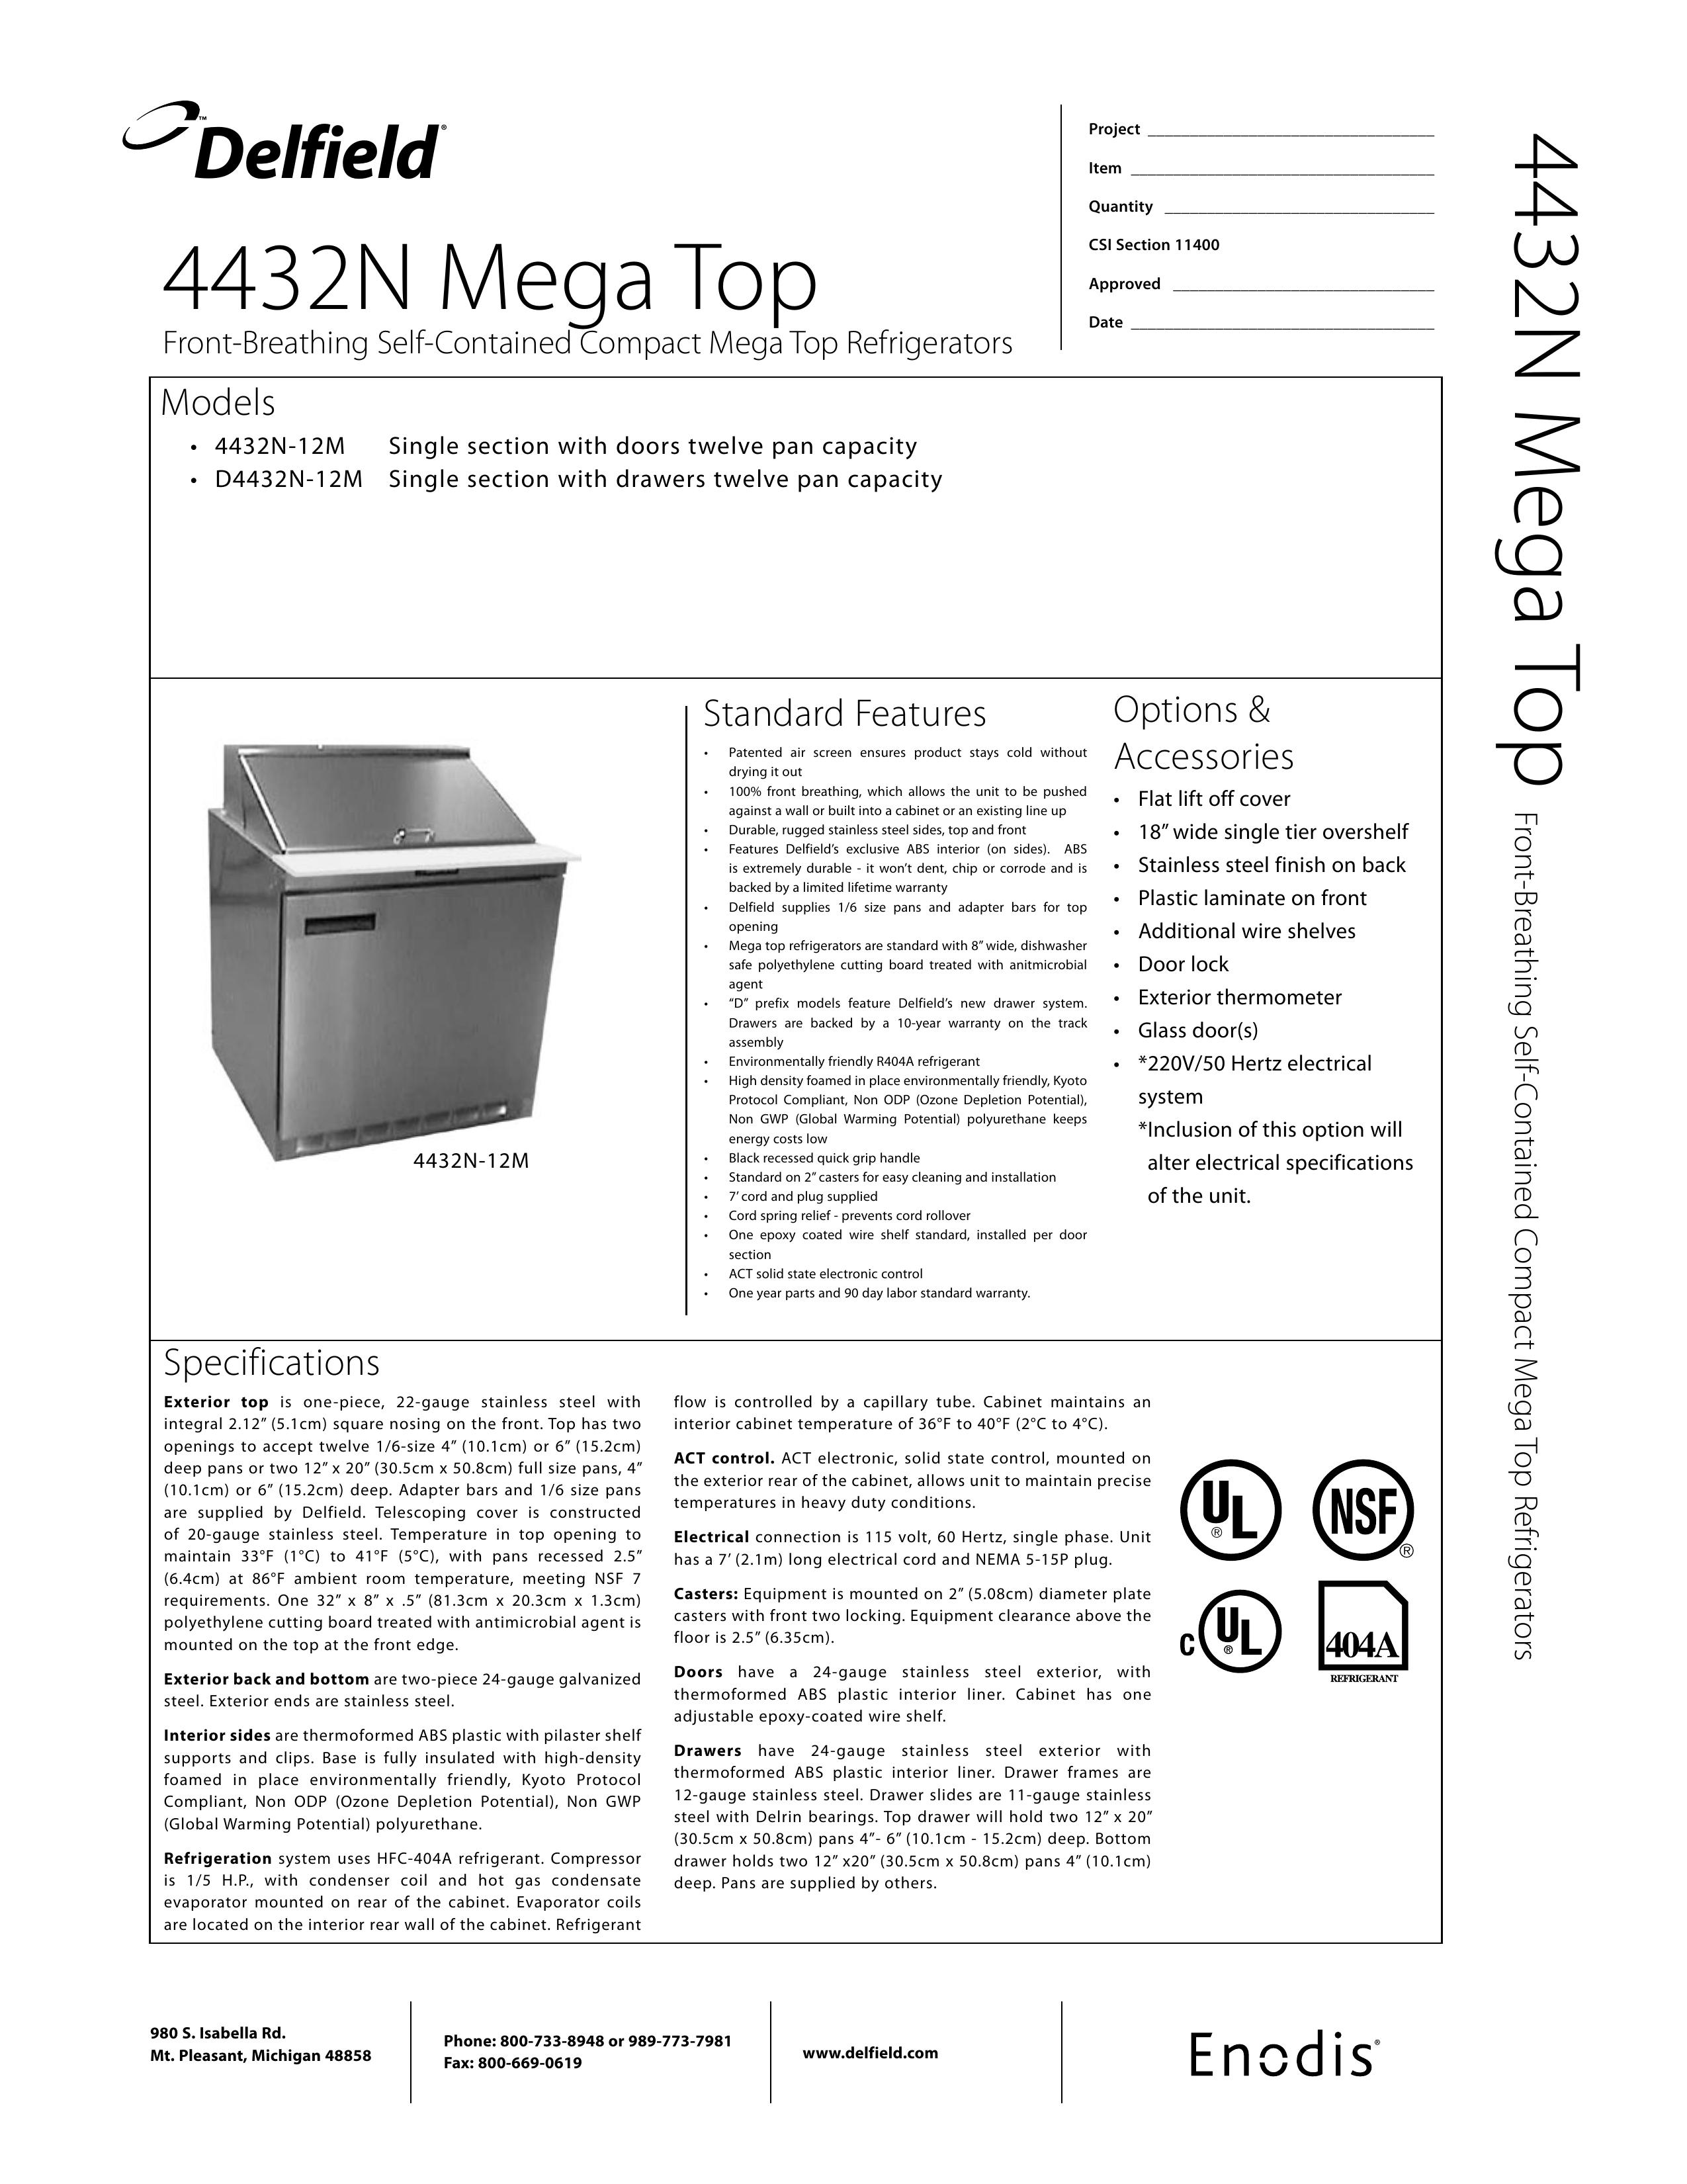 Delfield D4432N-12M Refrigerator User Manual